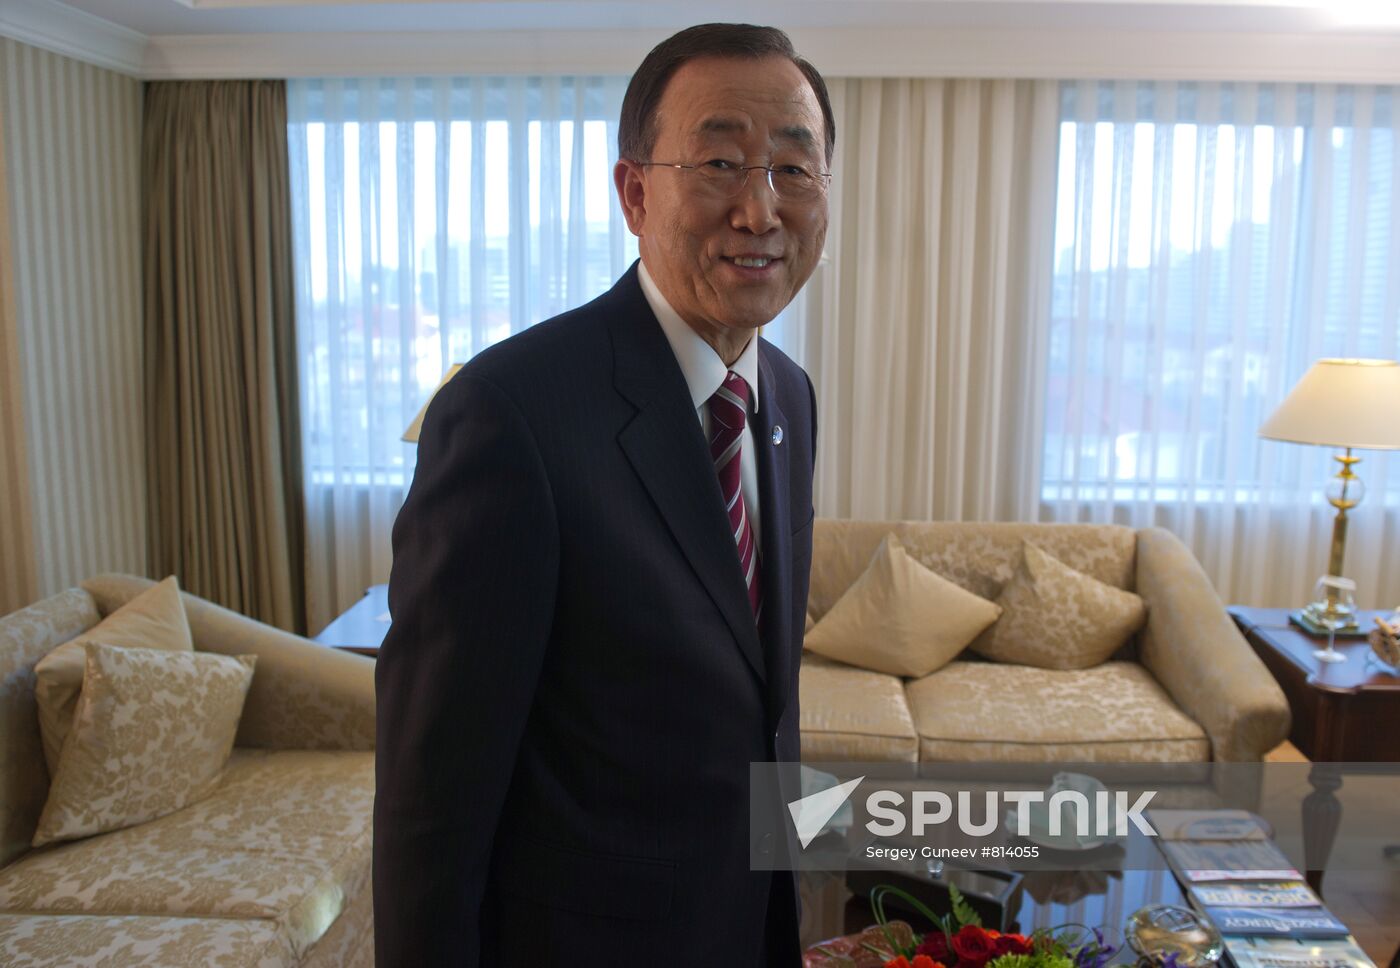 UN Secretary General Ban Ki-moon gives interview